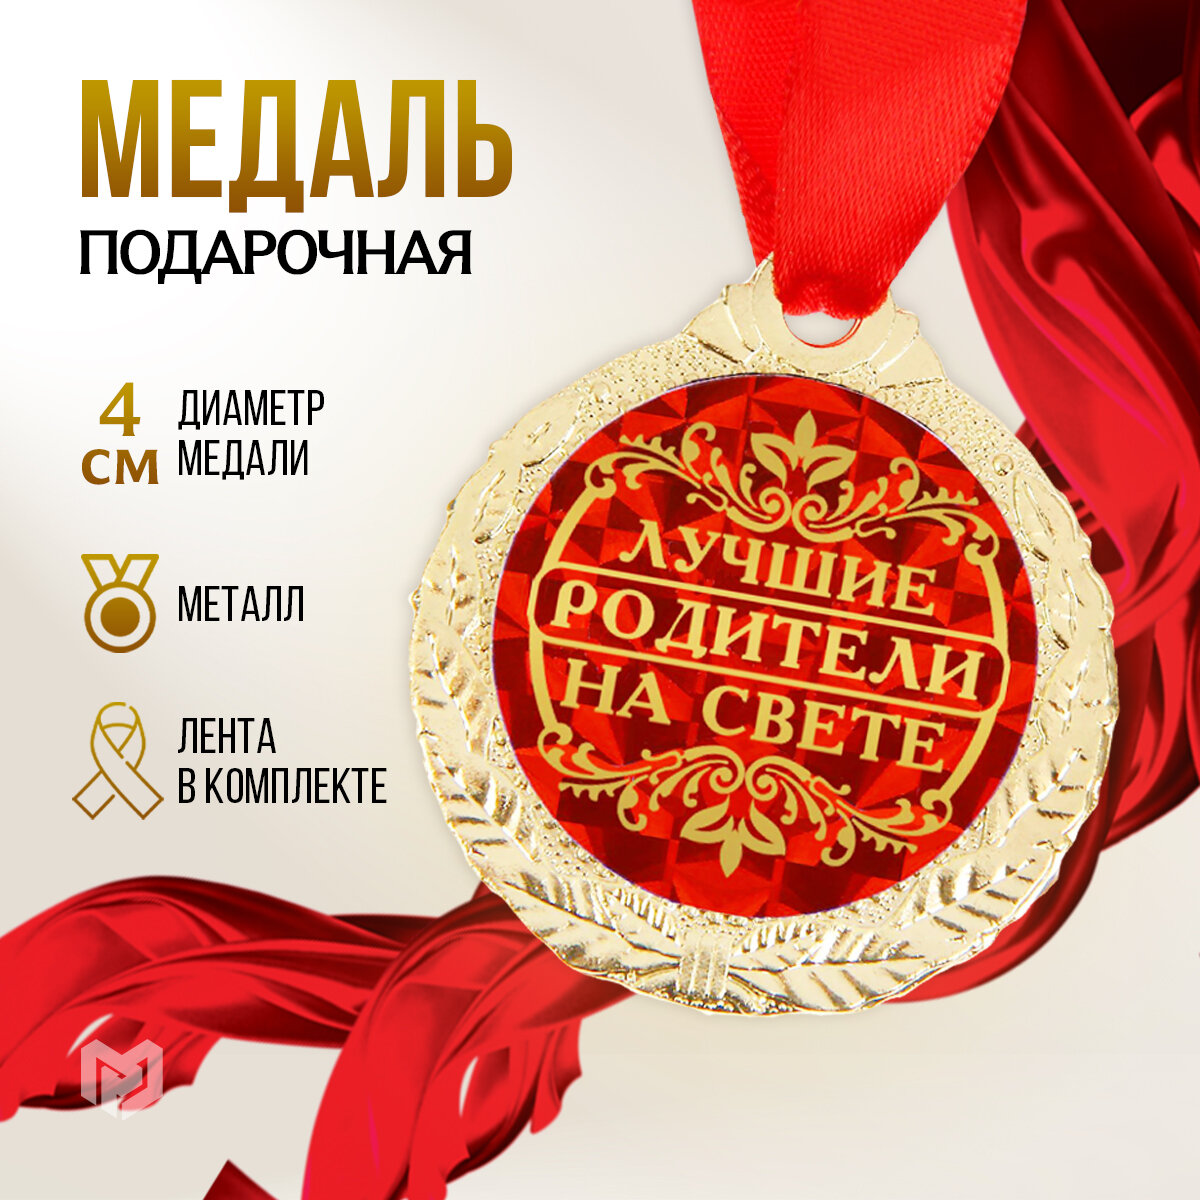 Медаль подарочная сувенирная "Лучшие родители на свете", диам - 4 см